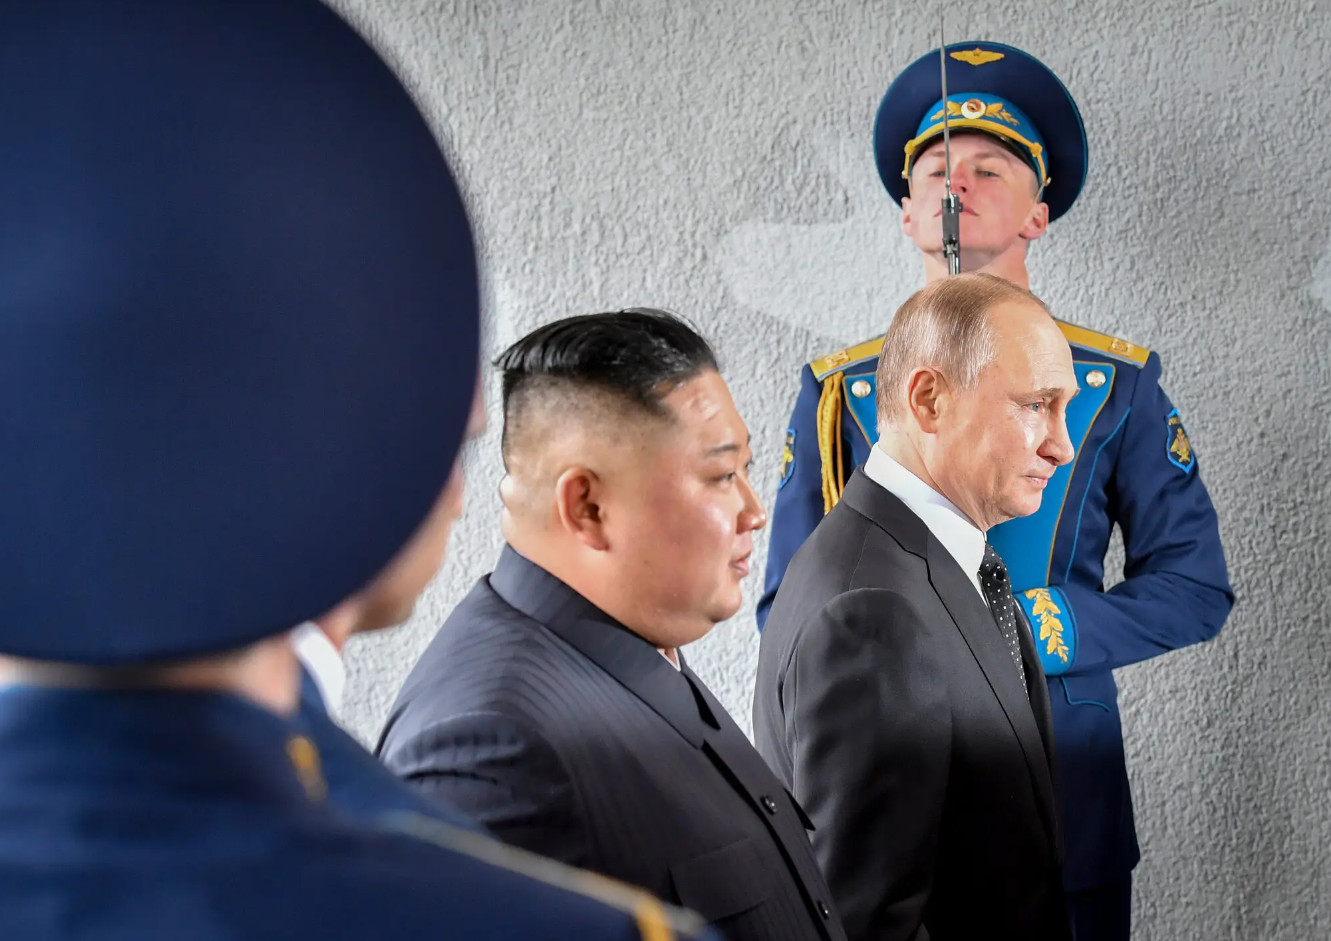 Φίλοι από ανάγκη ο Βλαντιμίρ Πούτιν και ο Κιμ Γιονγκ Ουν «απειλούν» τη Δύση – Τι θα συζητήσουν